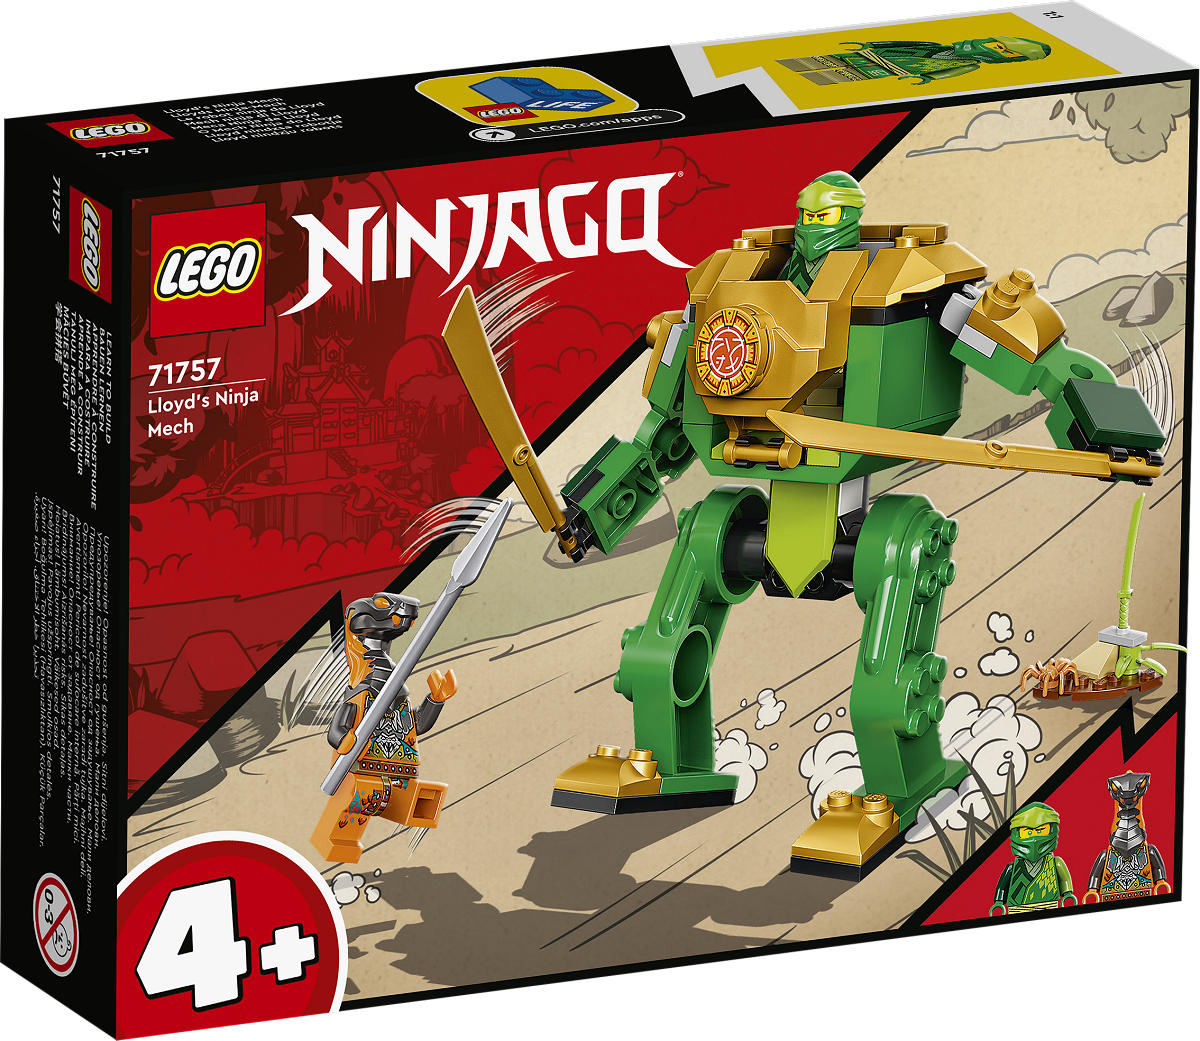 LEGO 71757 NINJAGO LlOYD'S NIMJAMECHA - 5702017151618 - 517986